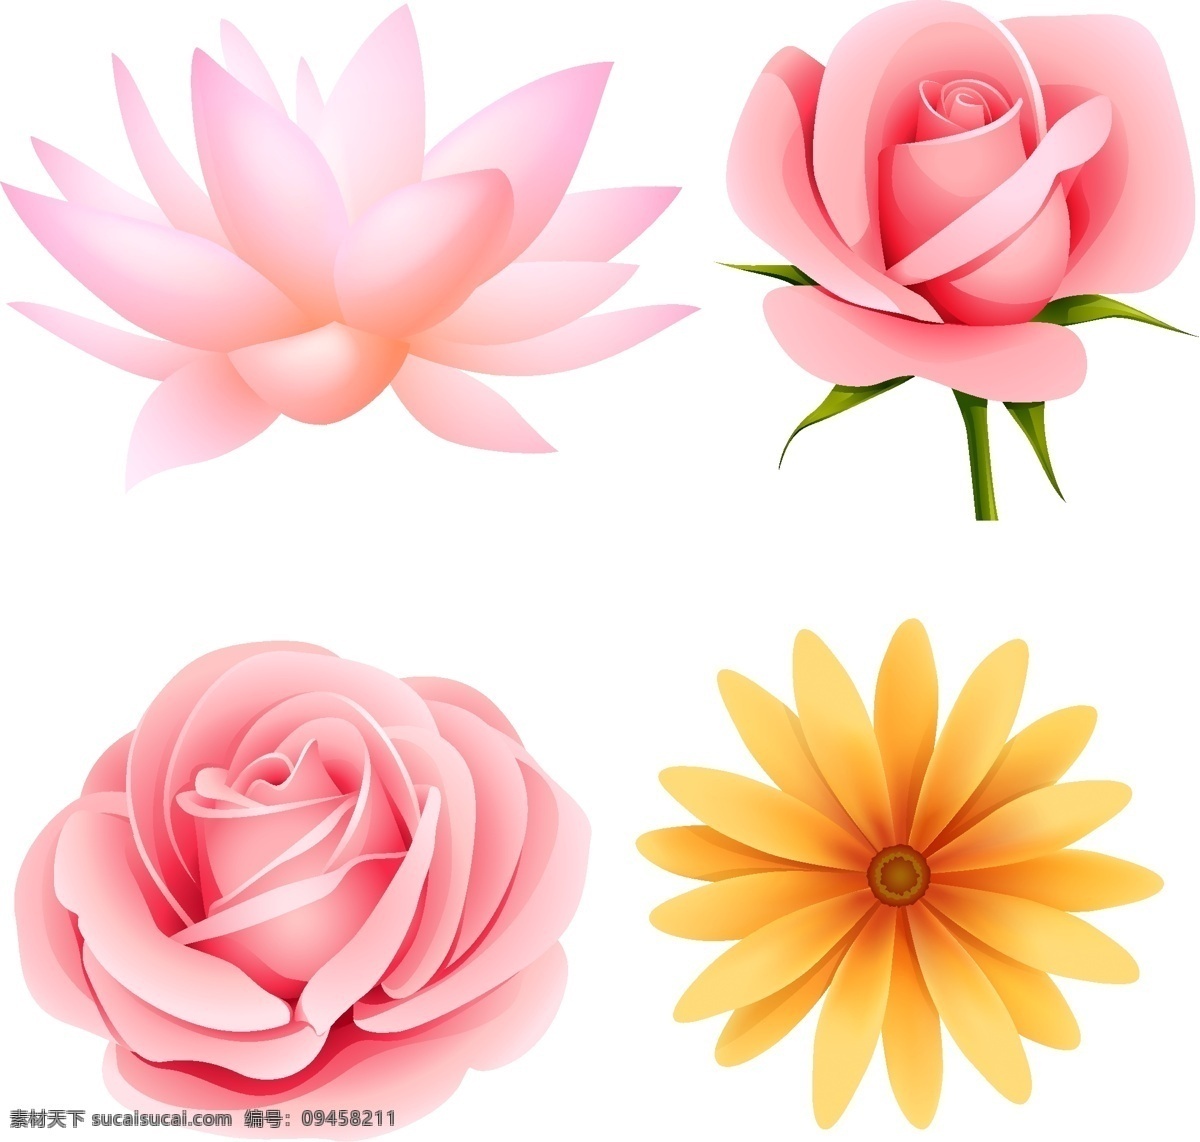 漂亮 花朵 矢量图 粉红色 荷花 花卉 玫瑰花 素材图片 小花朵 其他矢量图